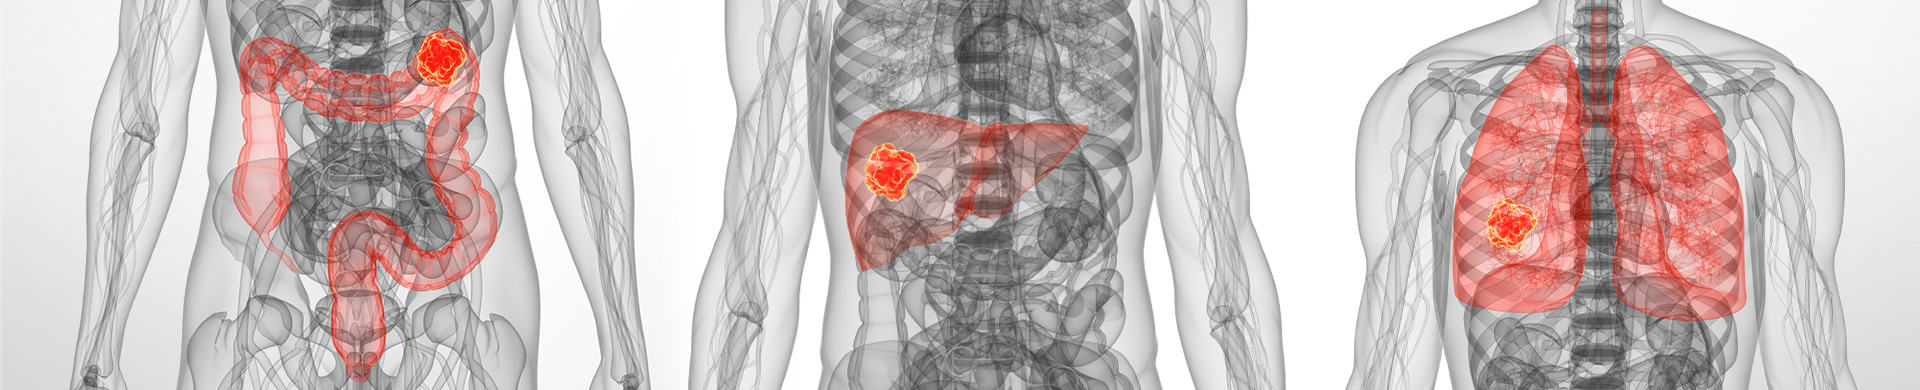 Neuroendocrine cancer spread to liver and bones